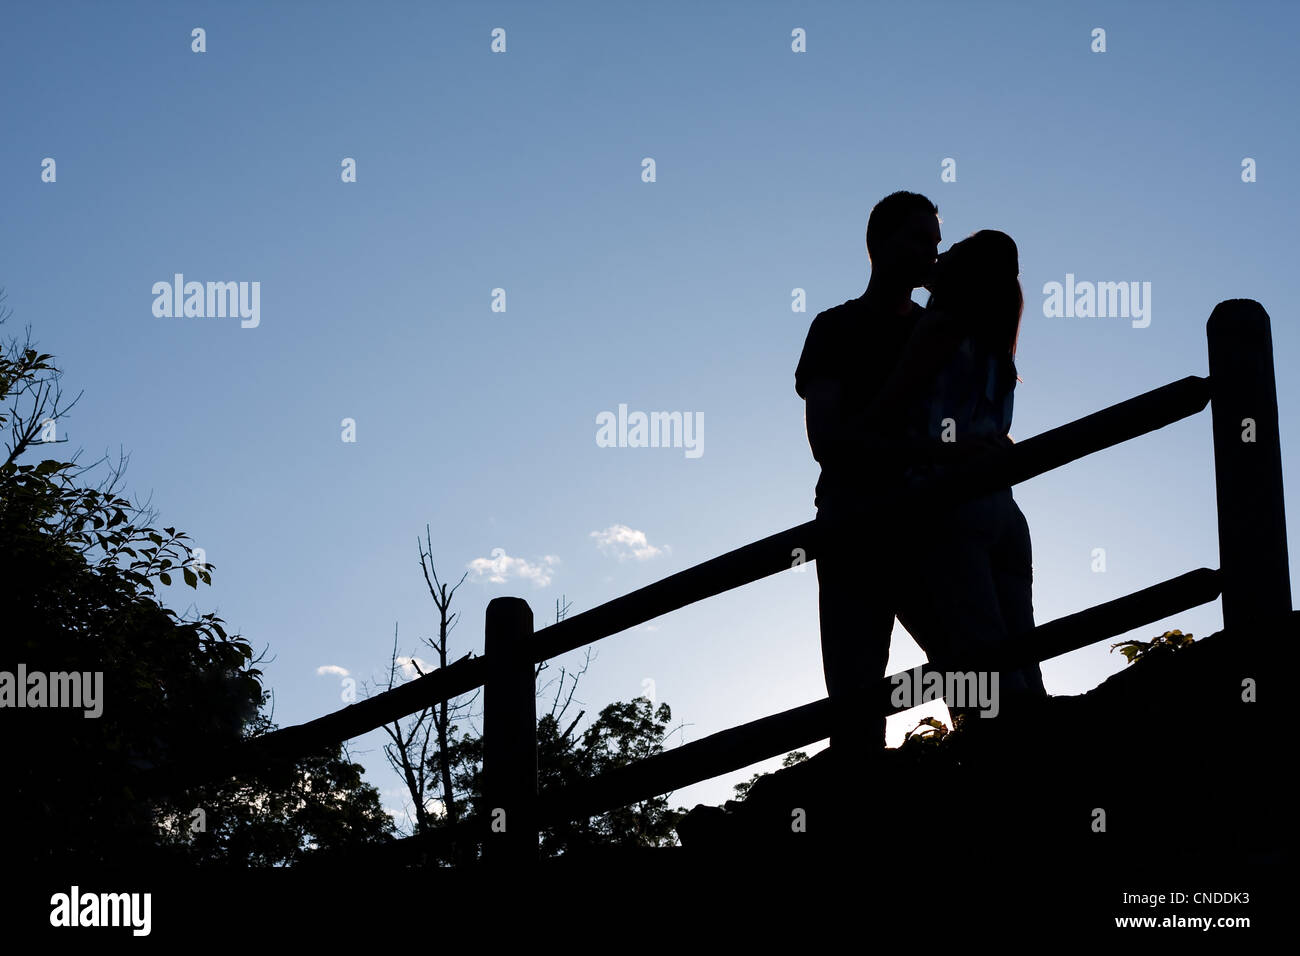 Silhouette von einem liebevollen paar romantisch küssen einander in den frühen Abendstunden. Stockfoto